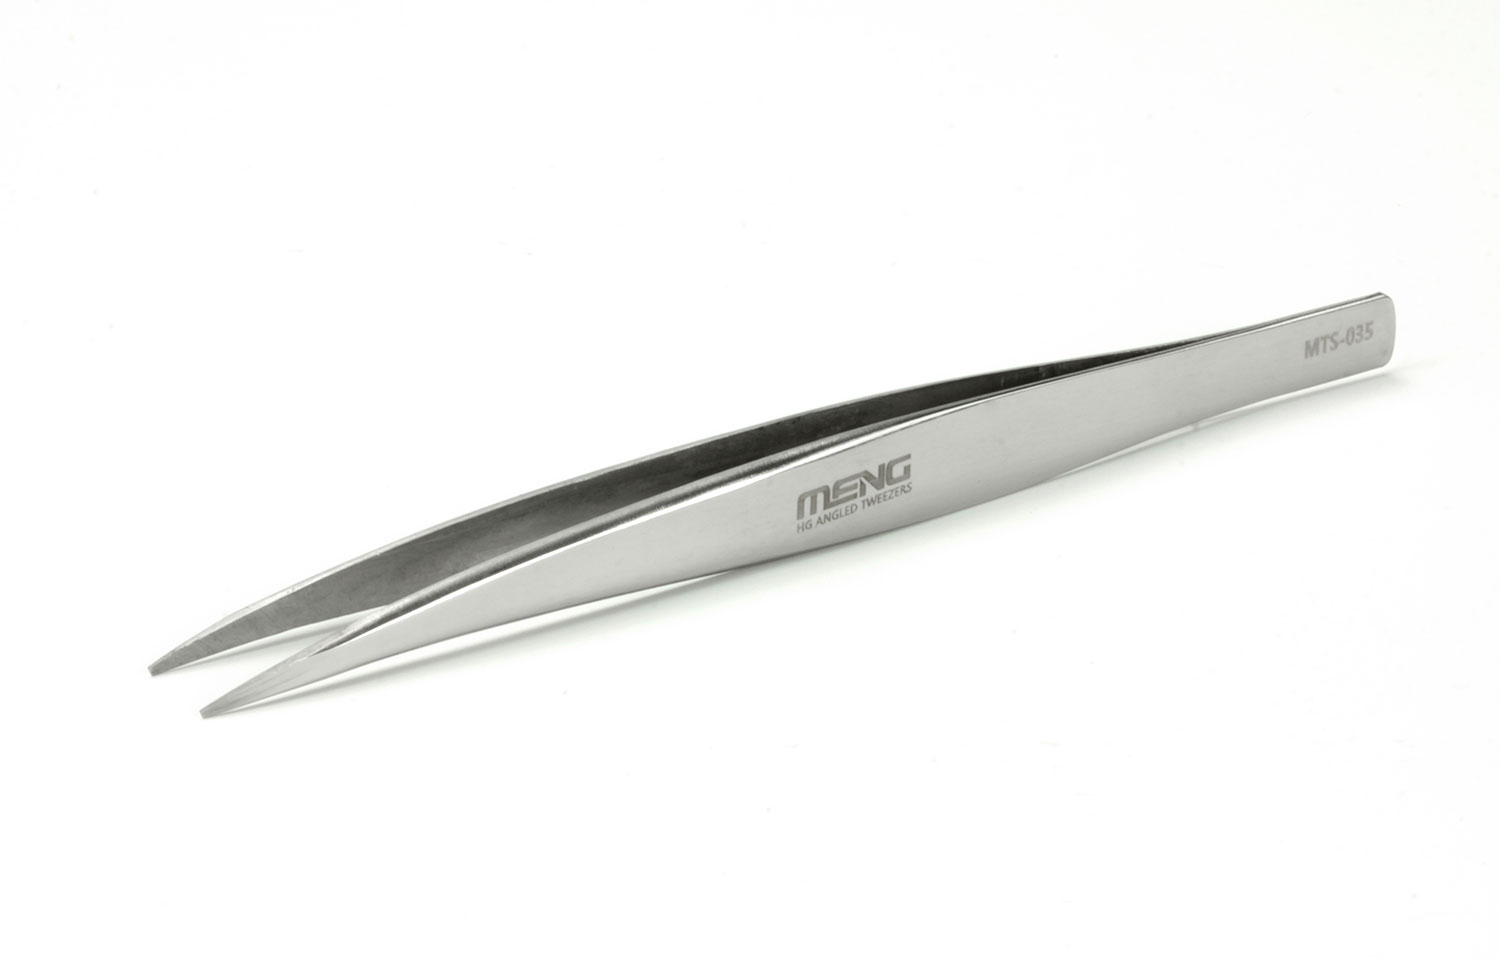 MTS-035  ручной инструмент  Пинцет плоский Tweezers Precision Flat-Tip Meng Model